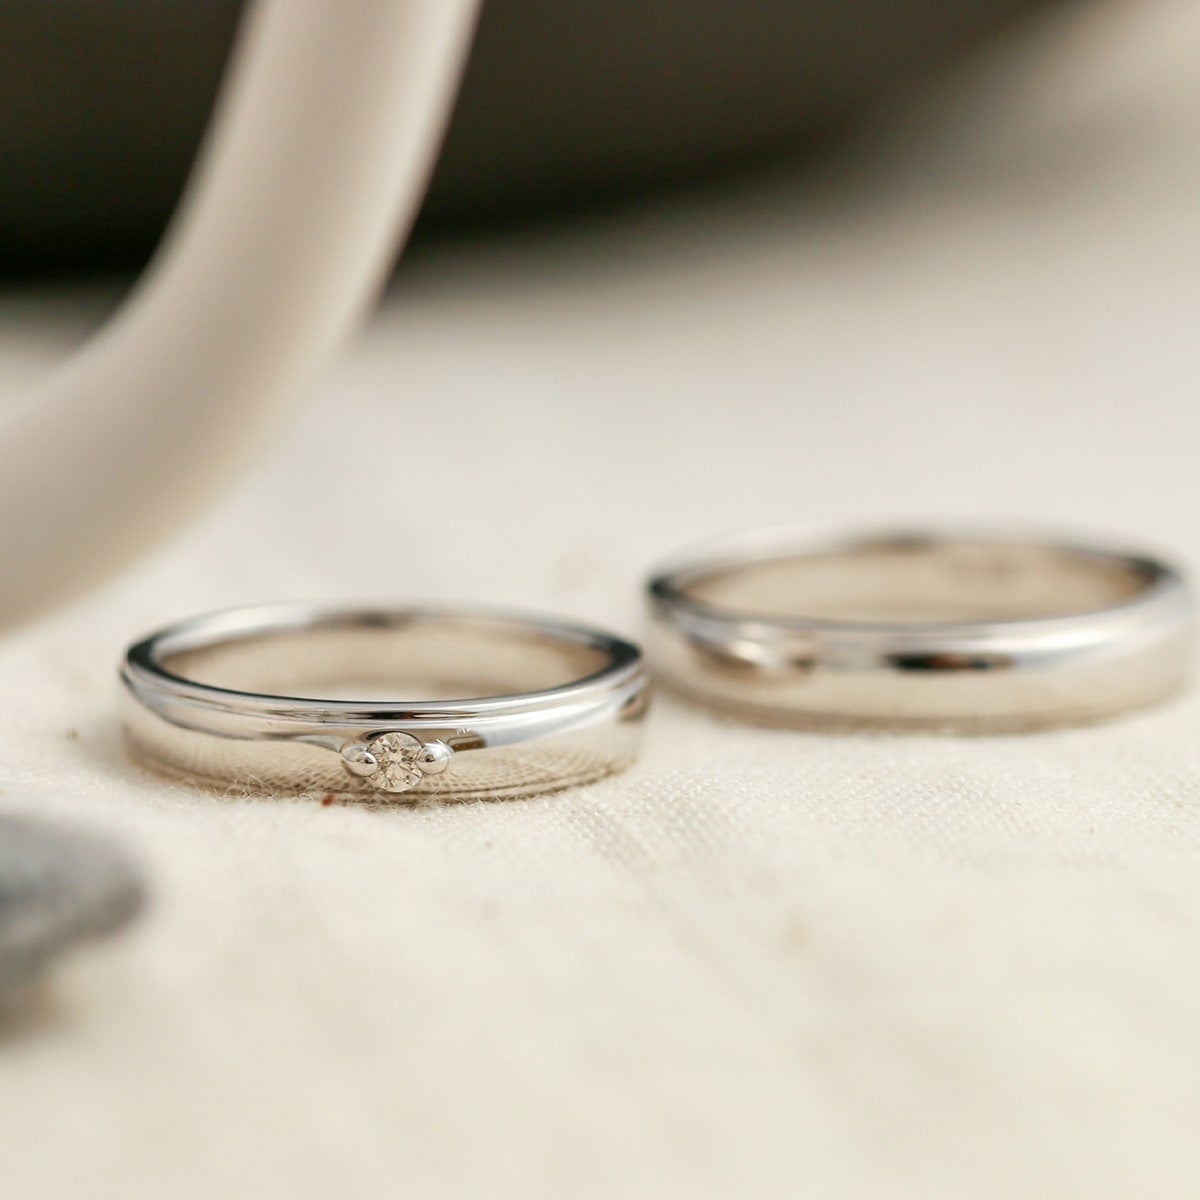 結婚指輪 ダイヤモンド 2本セット | dr790l-mr439m